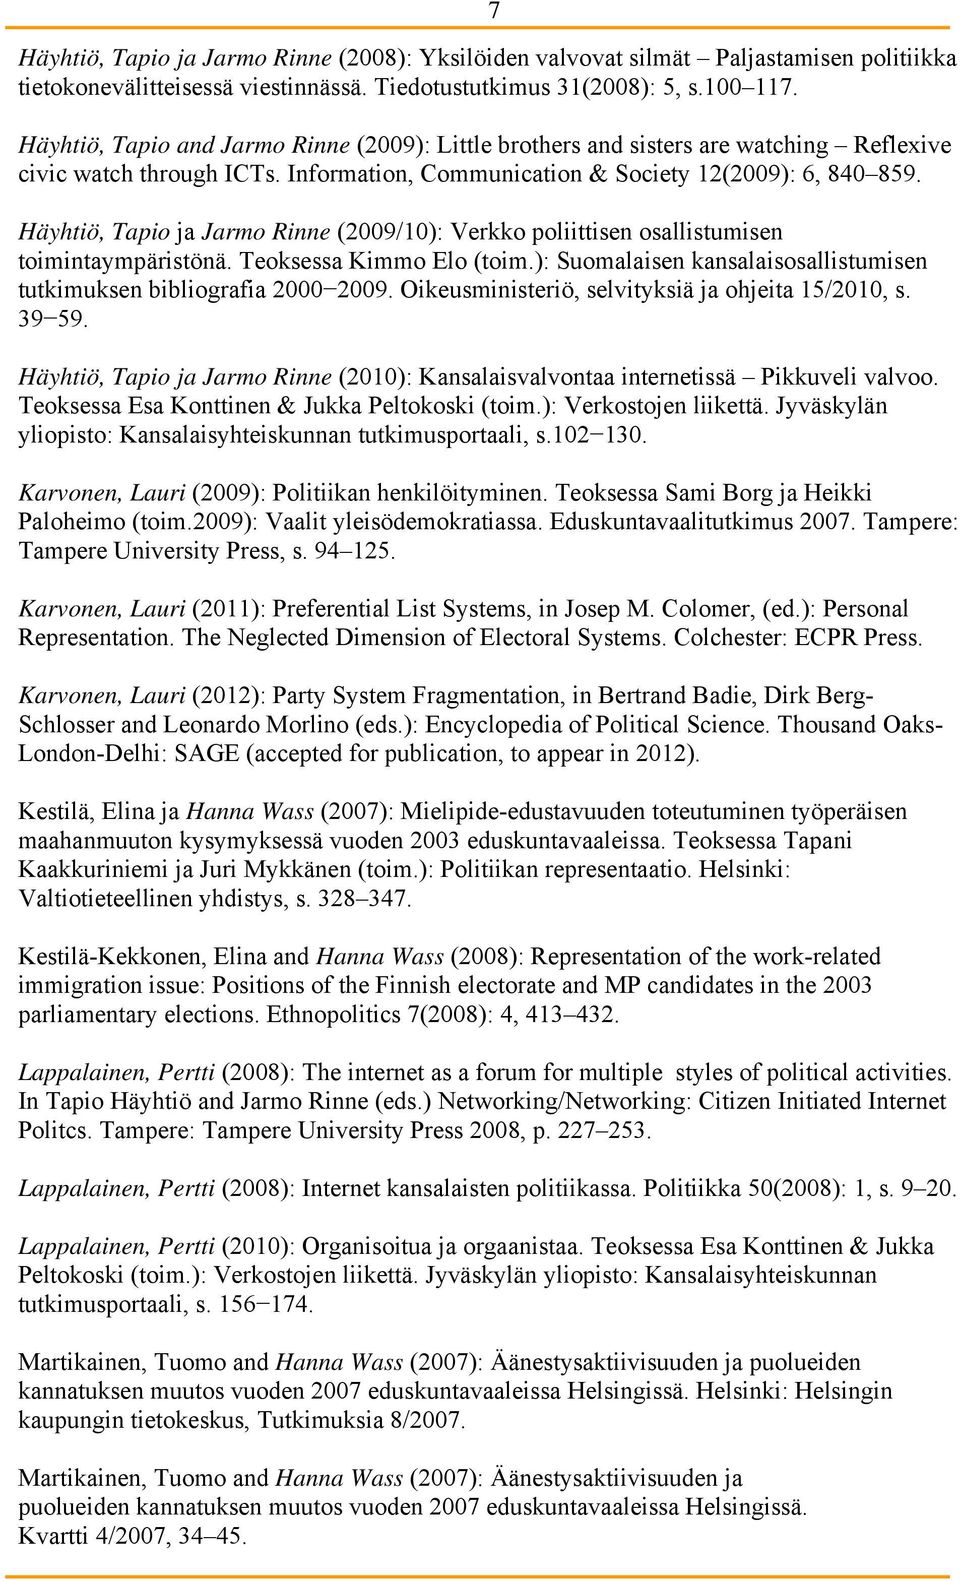 Häyhtiö, Tapio ja Jarmo Rinne (2009/10): Verkko poliittisen osallistumisen toimintaympäristönä. Teoksessa Kimmo Elo (toim.): Suomalaisen kansalaisosallistumisen tutkimuksen bibliografia 2000 2009.